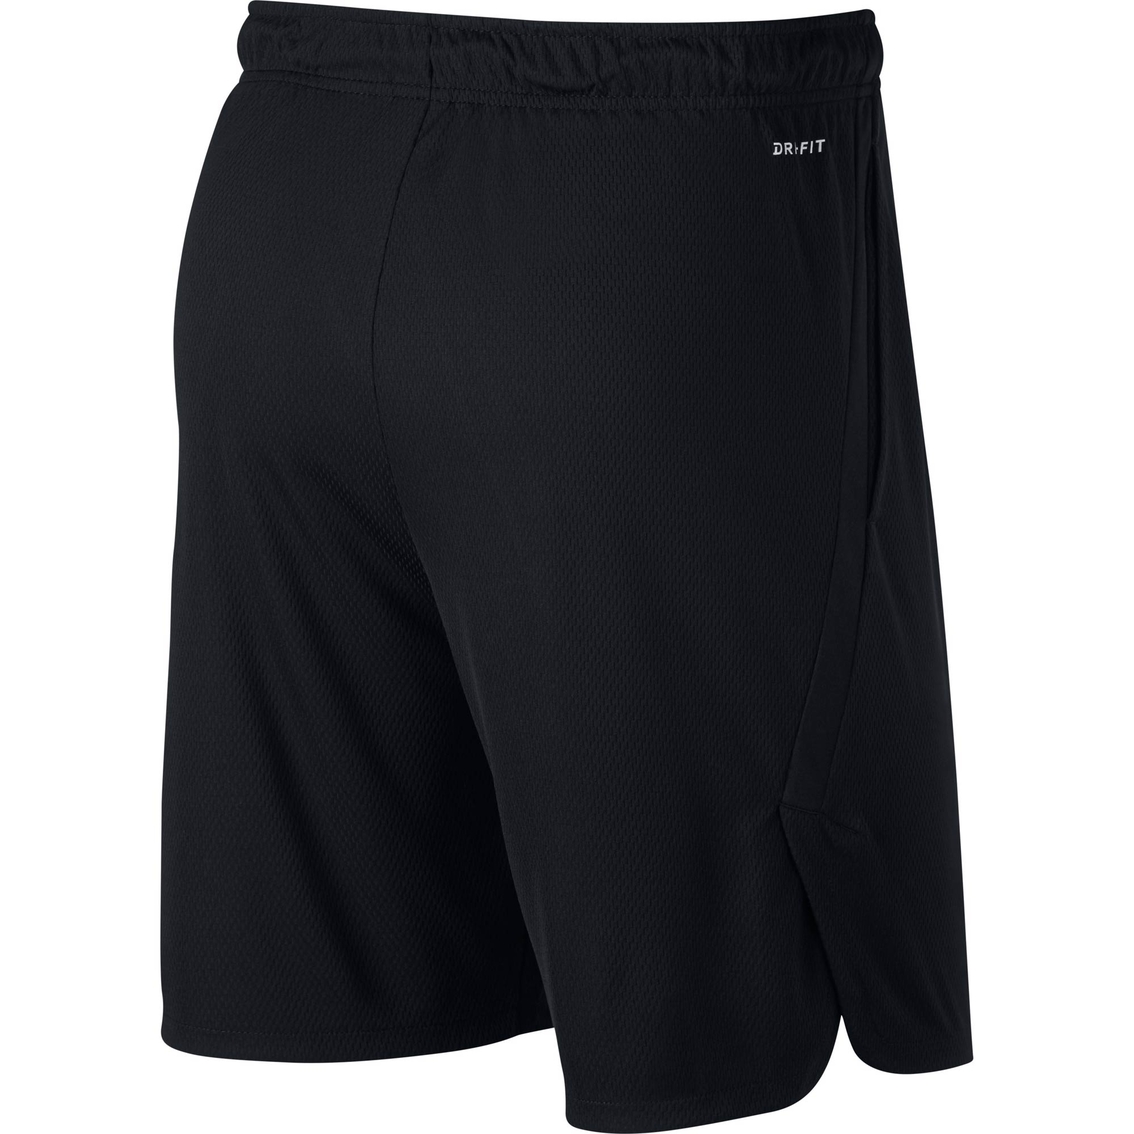 Nike Men's Dry Short 4.0 Training Shorts - Image 2 of 2